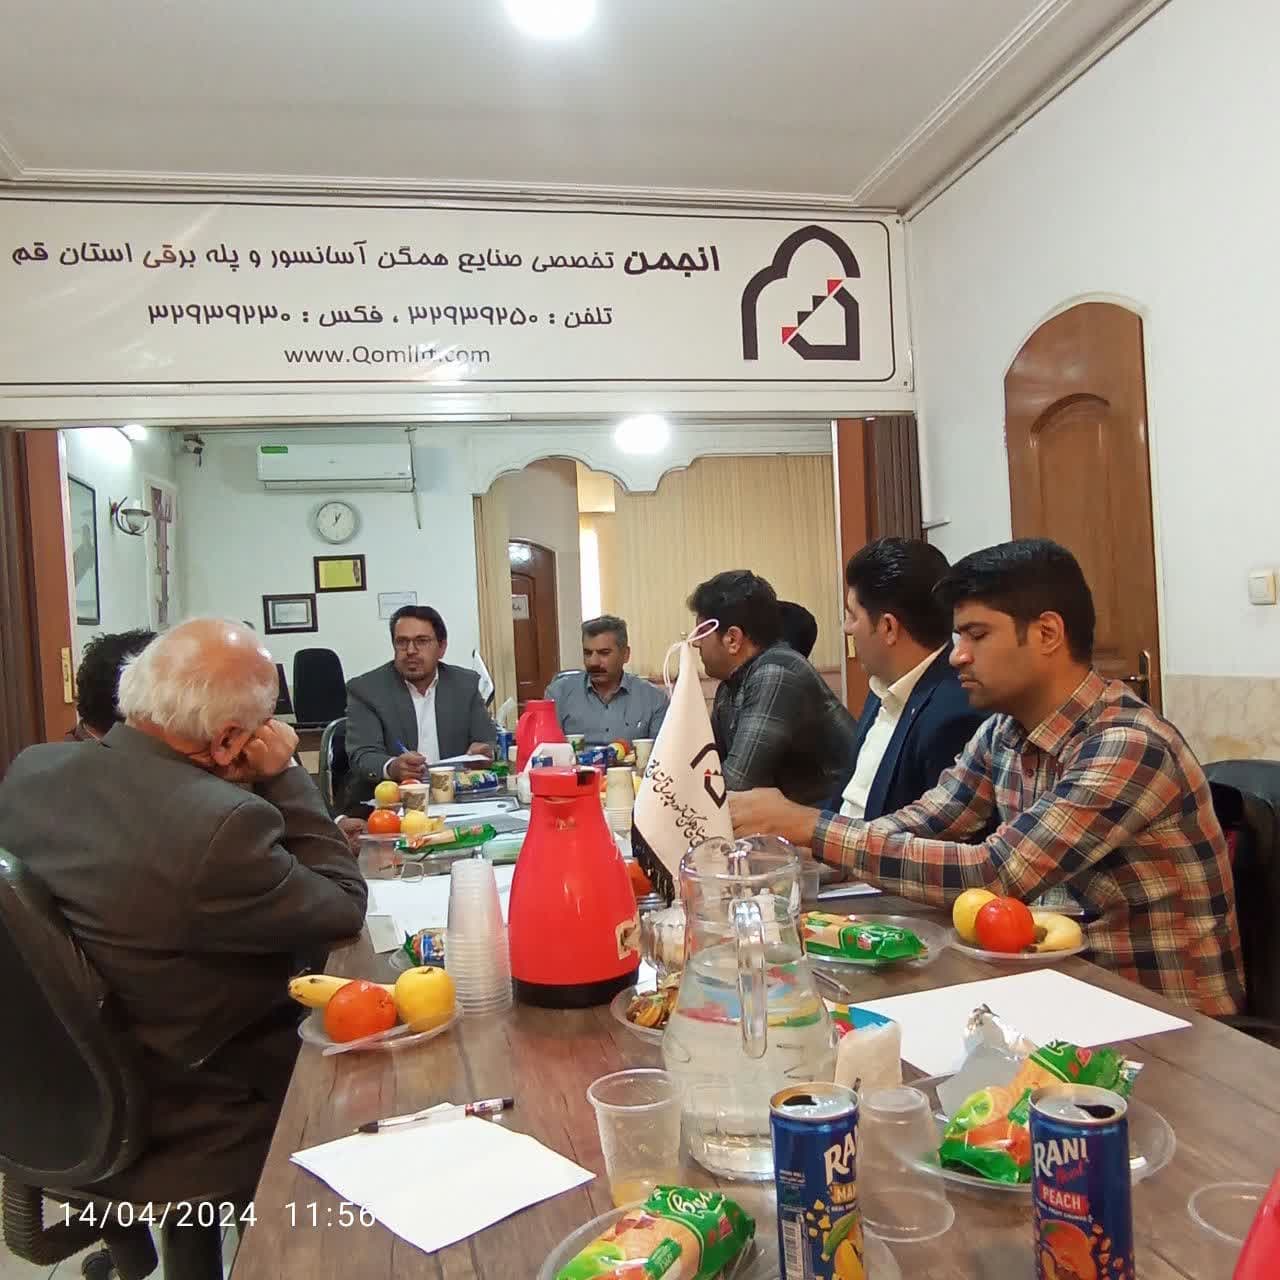  نخستین جلسه کمیته نظارت استانی آسانسور به میزبانی انجمن تخصصی آسانسور استان برگزار شد